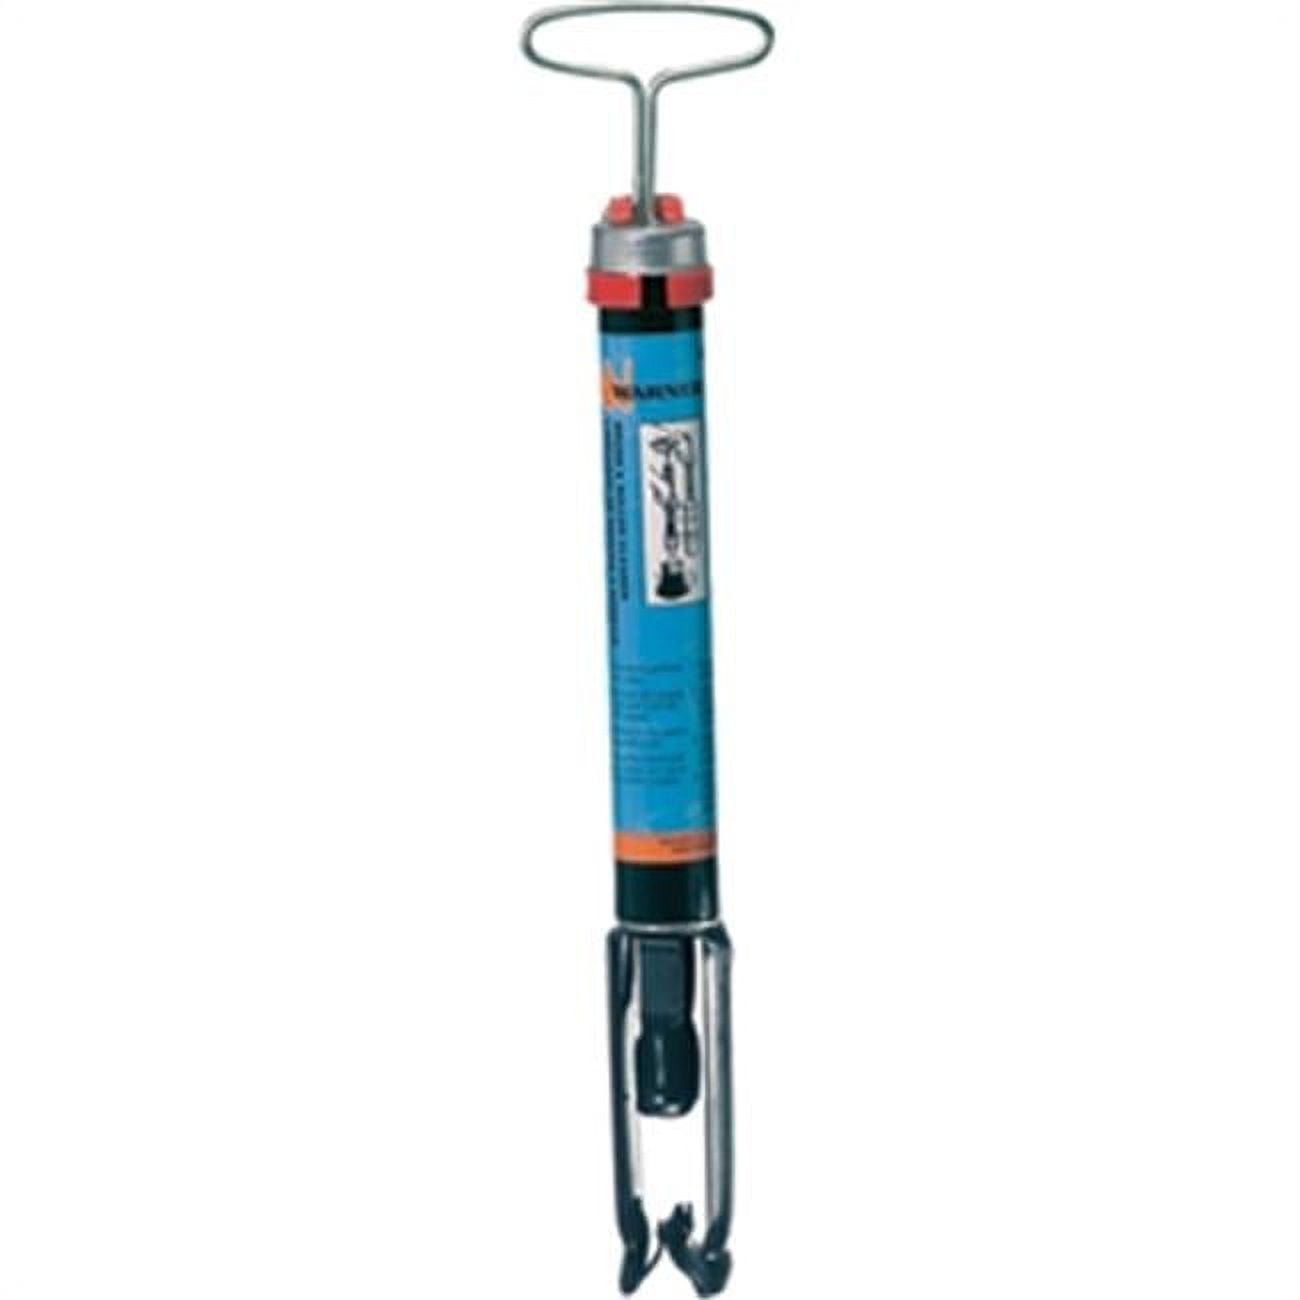 Warner Paint Brush & Roller Cleaner Spinner Tool, 380